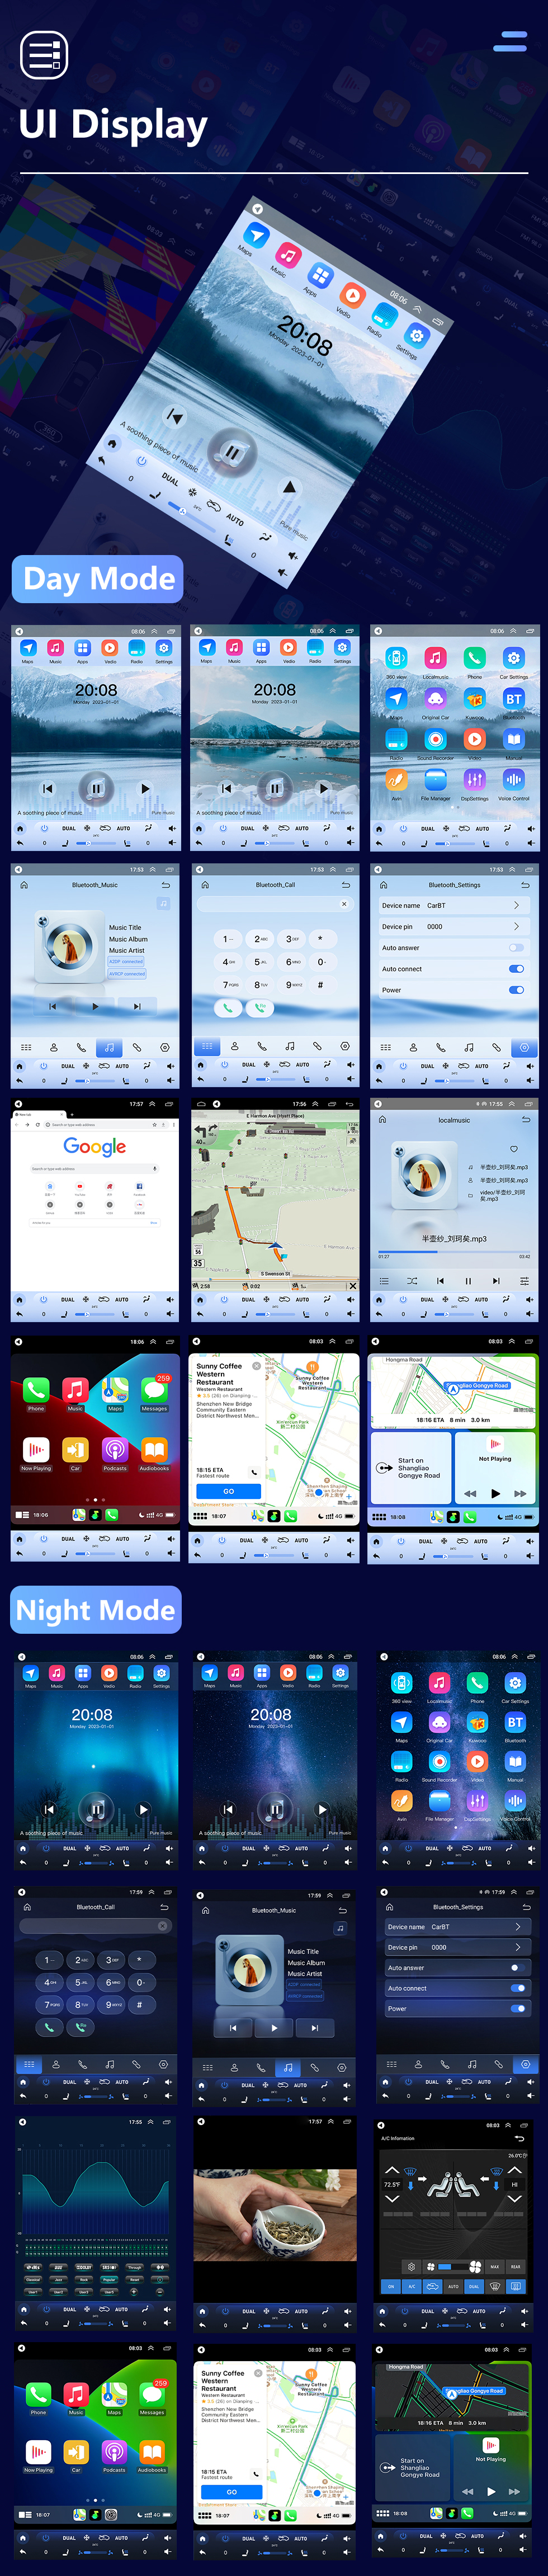 Seicane 2008-2011 Nissan Tiida 9,7 polegadas Android 10.0 GPS Navigation Radio com tela sensível ao toque Bluetooth USB WIFI suporte Carplay Câmera traseira